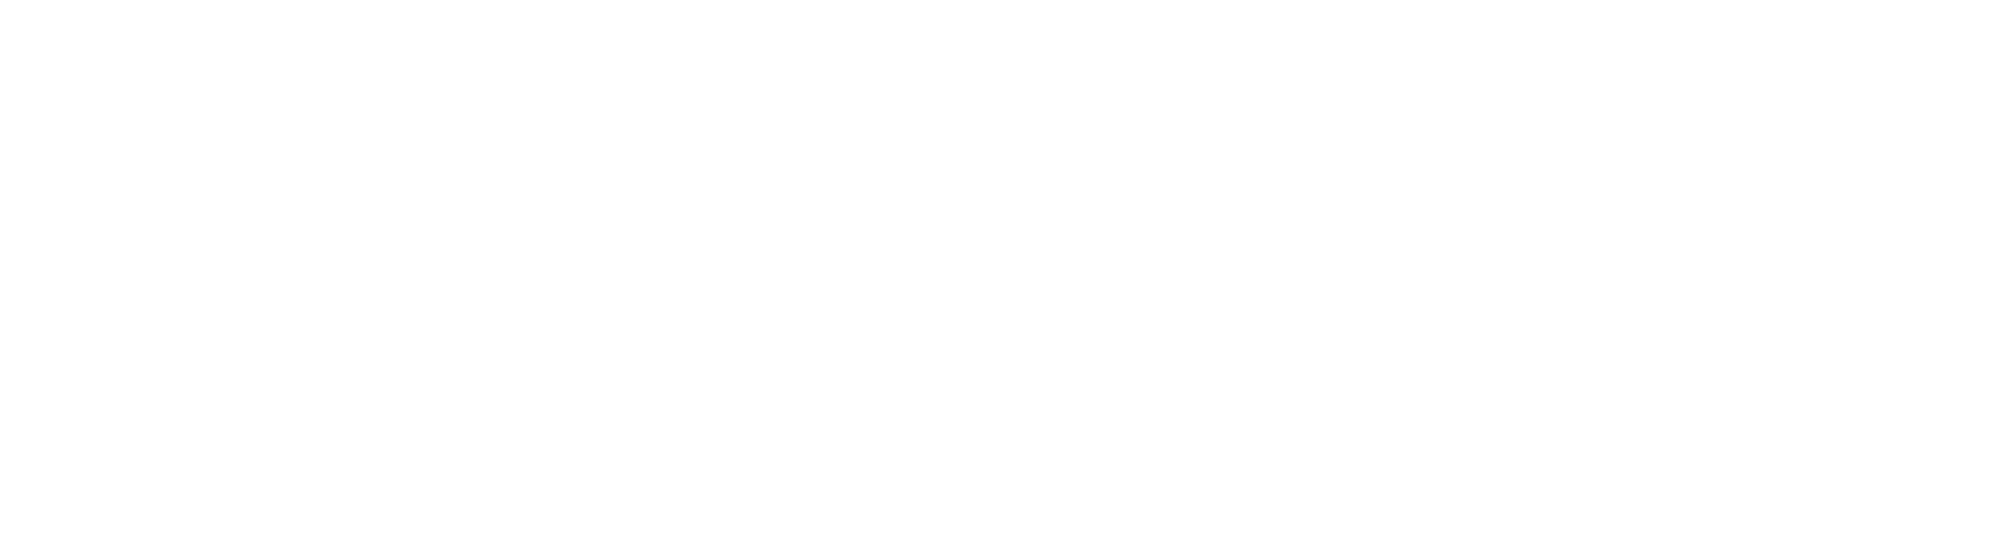 Inspiresport Logo white 002